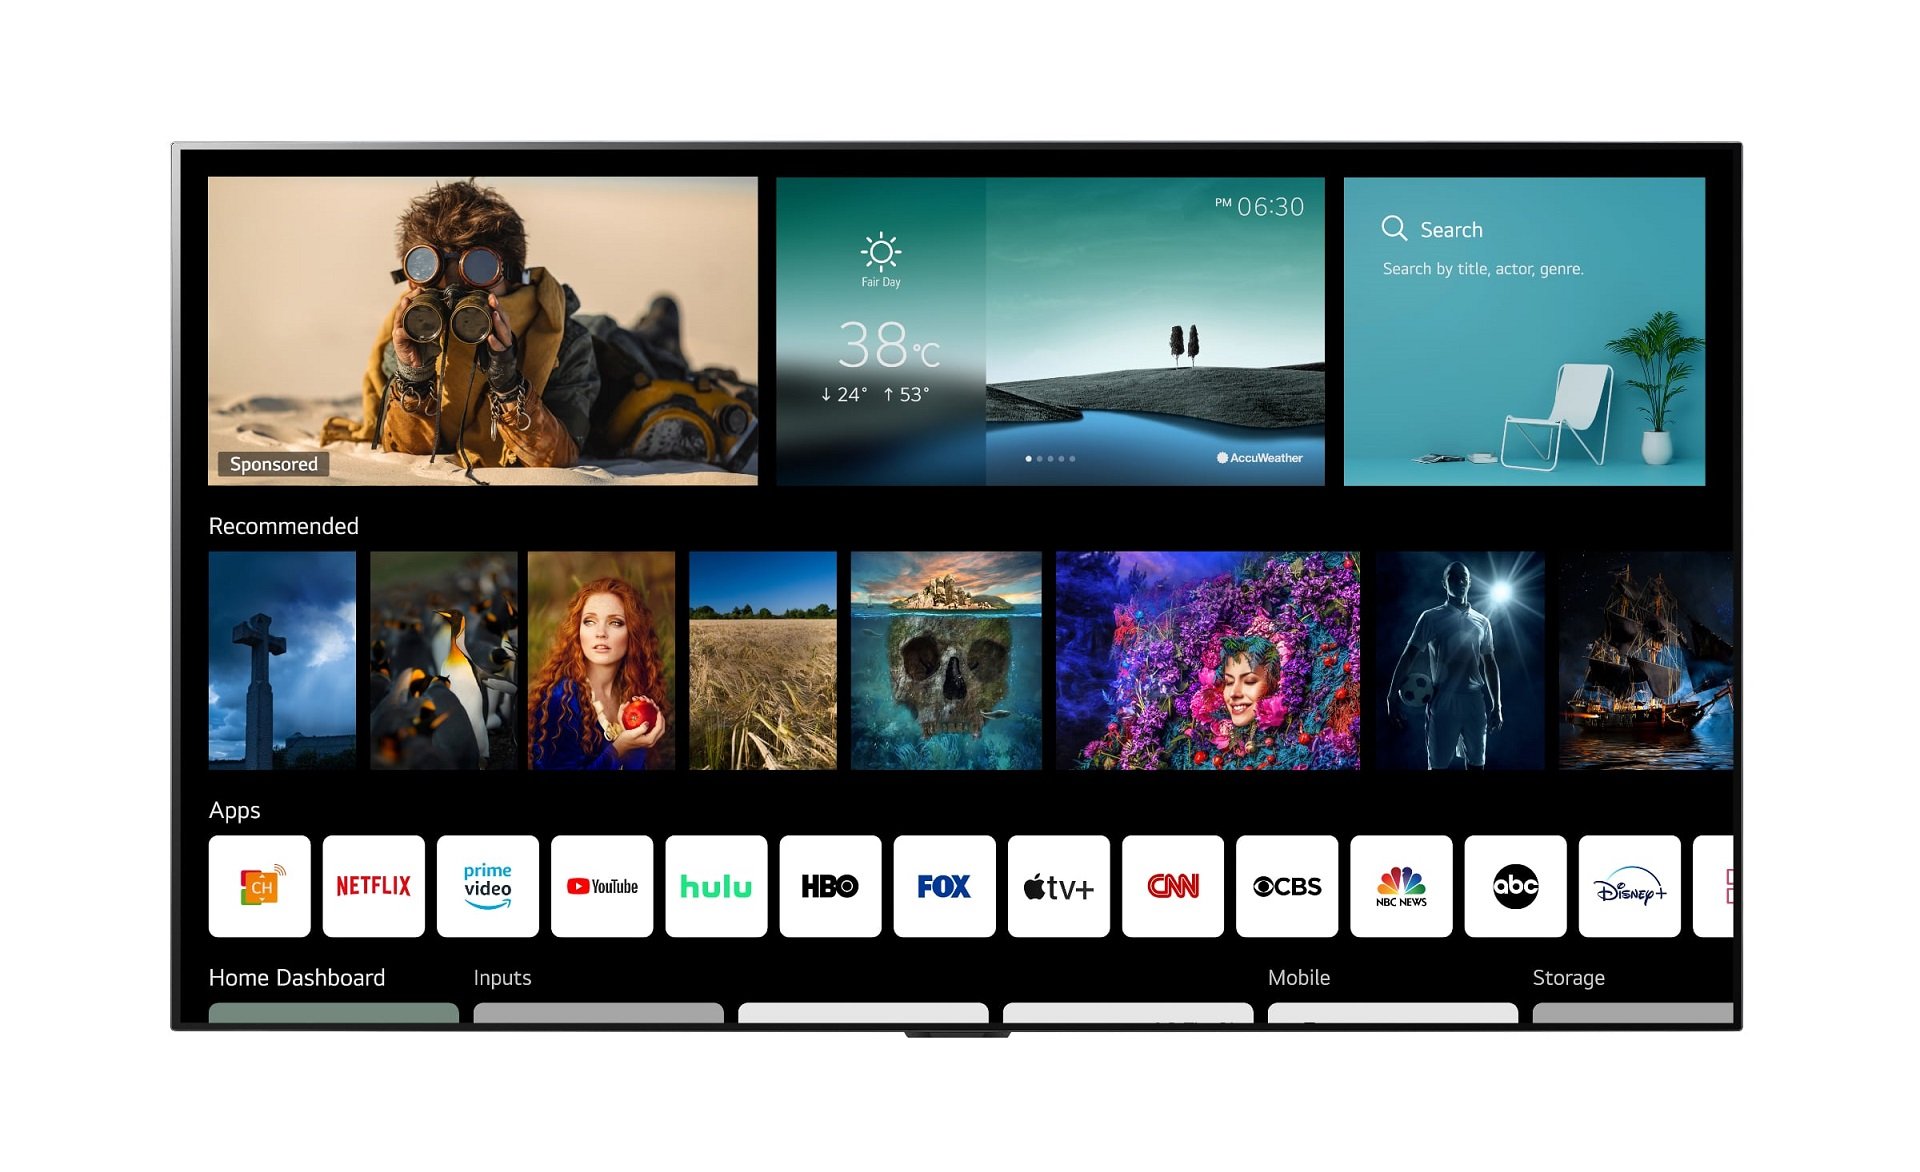 Το webOS 6.0 της LG για Smart TVs έρχεται με ανανεωμένο γραφικό περιβάλλον και NFC τηλεχειριστήριο